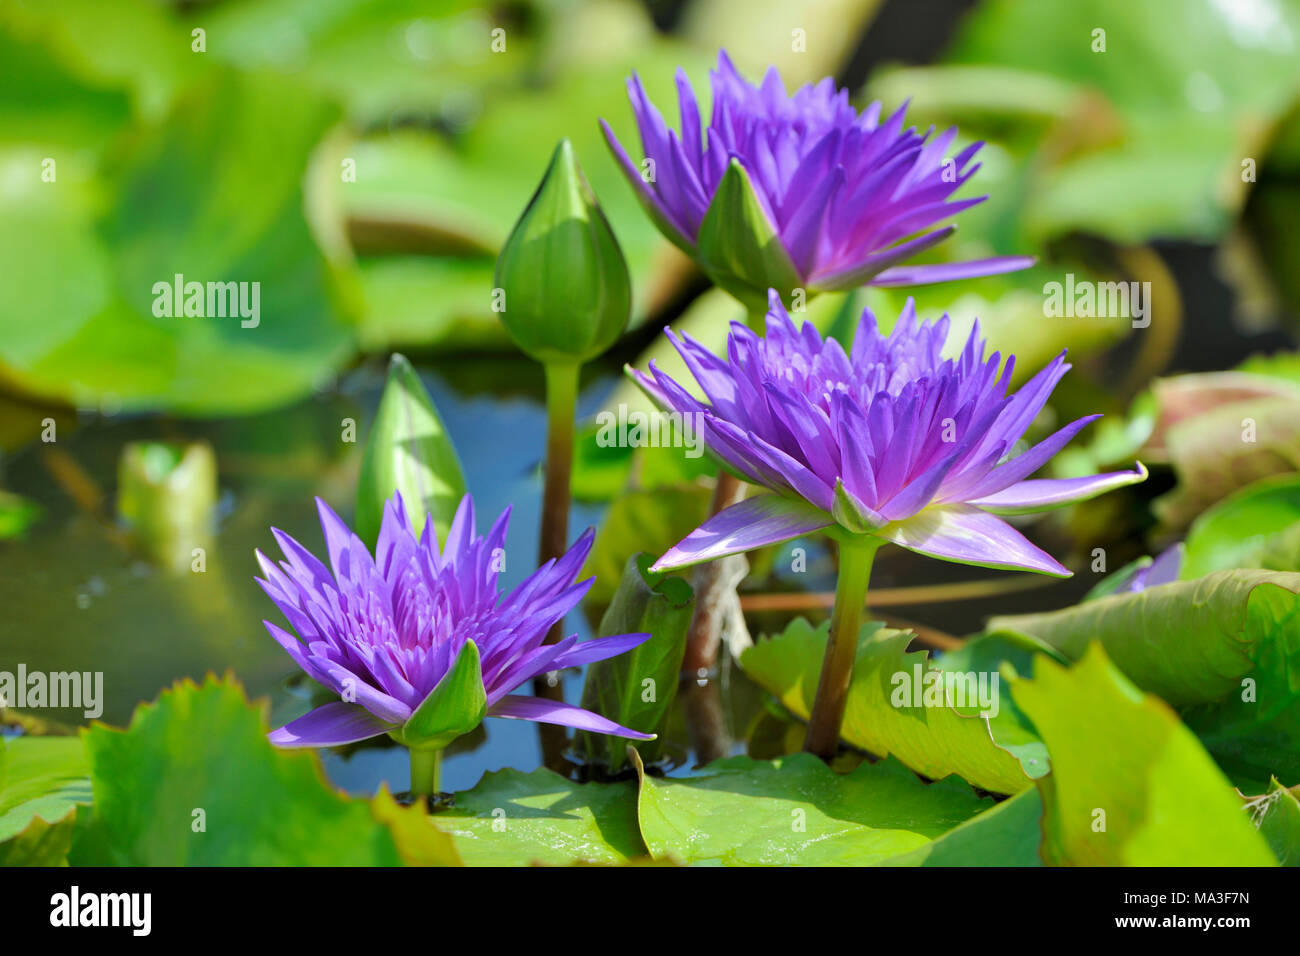 Violet lotus flowers, Nelumbo sp. Stock Photo